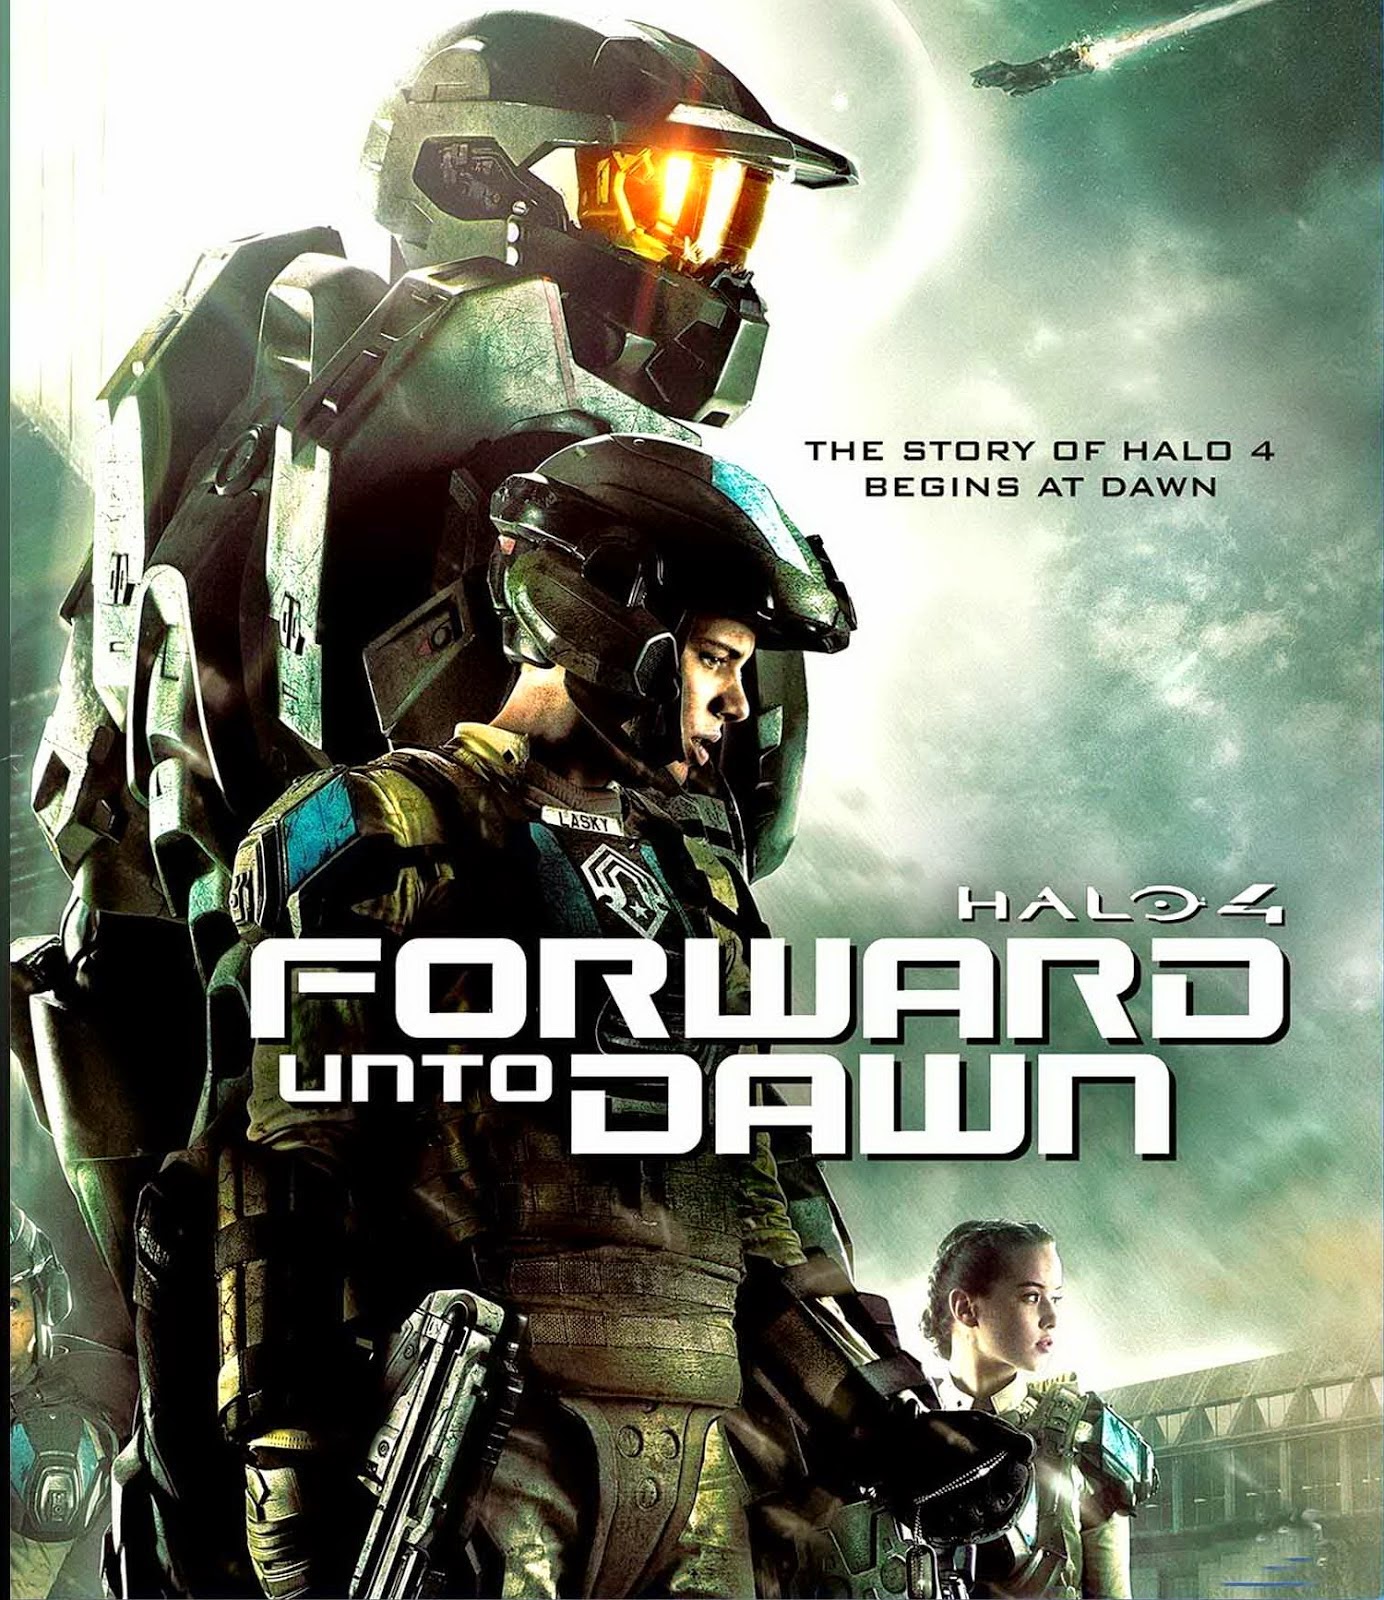 ดูหนังออนไลน์ Halo 4 Forward Unto Dawn เฮโล 4 หน่วยฝึกรบมหากาฬ